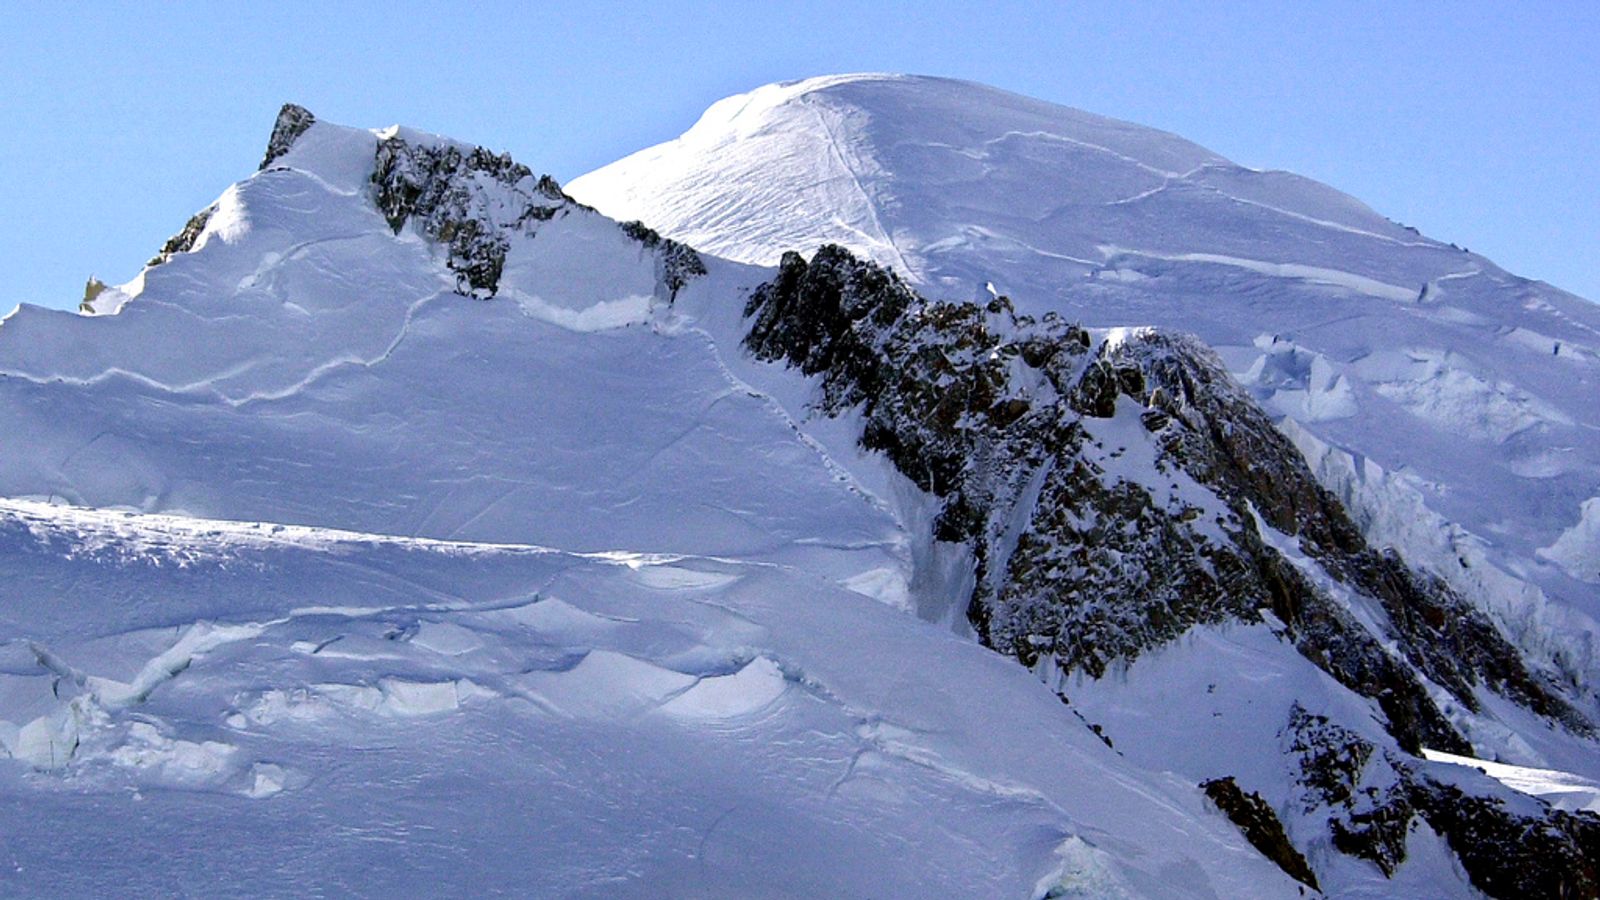 Une avalanche tue une mère et son fils britanniques skiant sur le Mont Blanc en France |  Nouvelles du monde